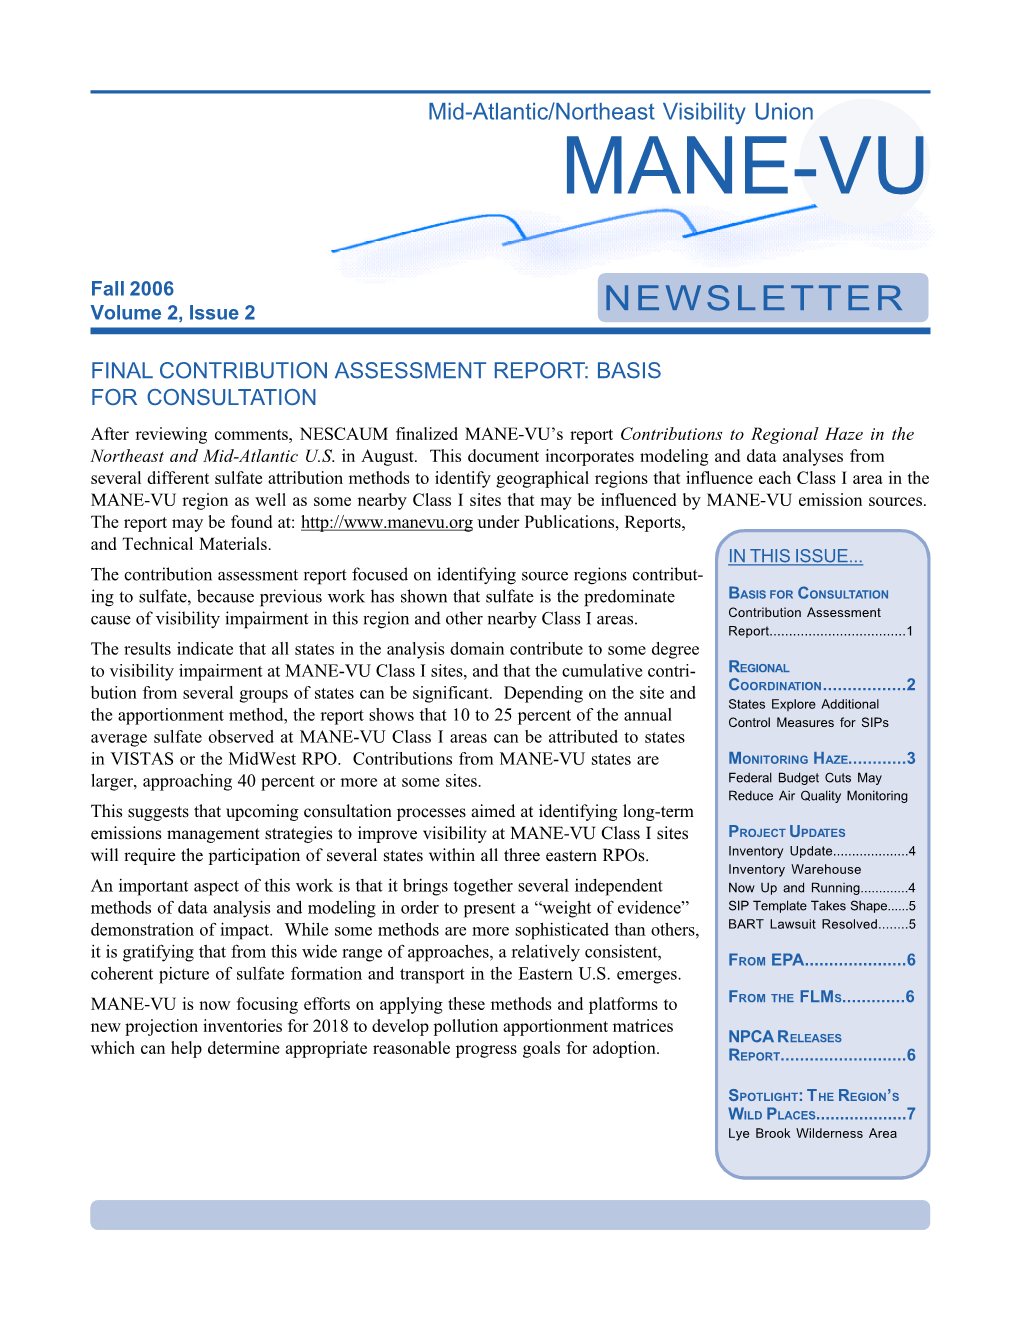 MANE-VU Newsletter, Fall 2006